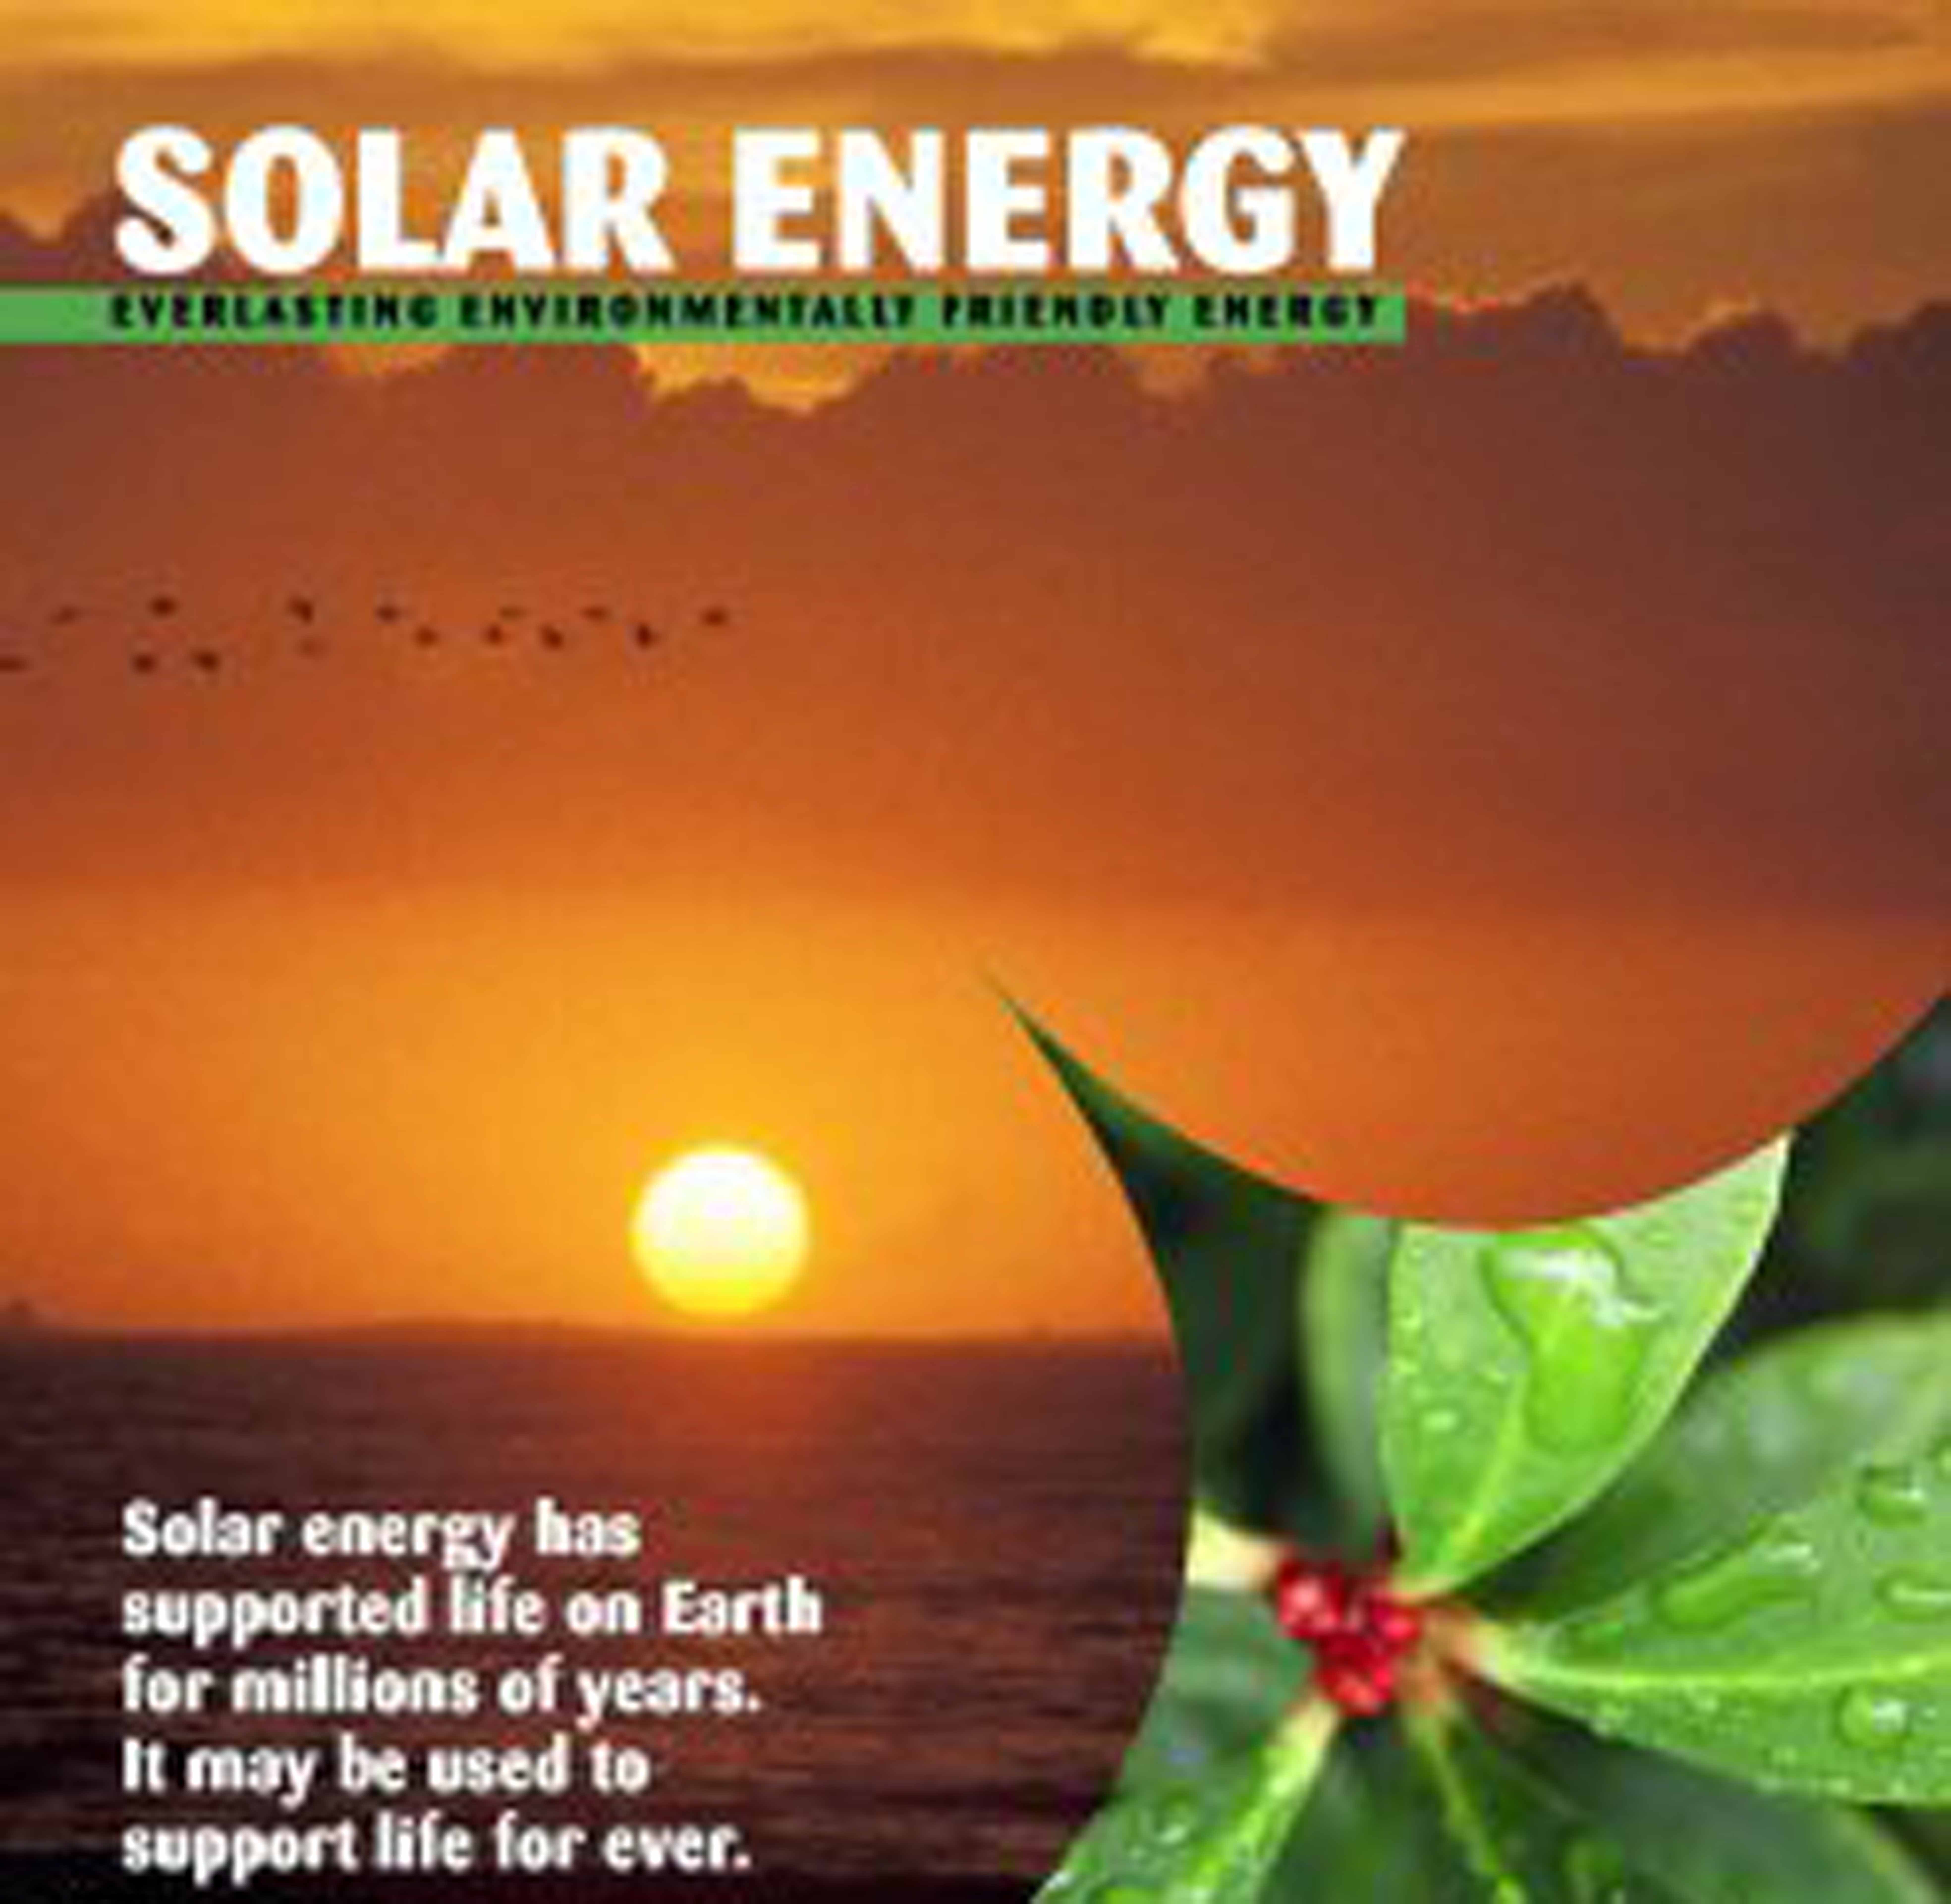 http://www.uws.edu.au/__data/assets/image/0003/35580/Solar_Energy_Banner_V2.jpg